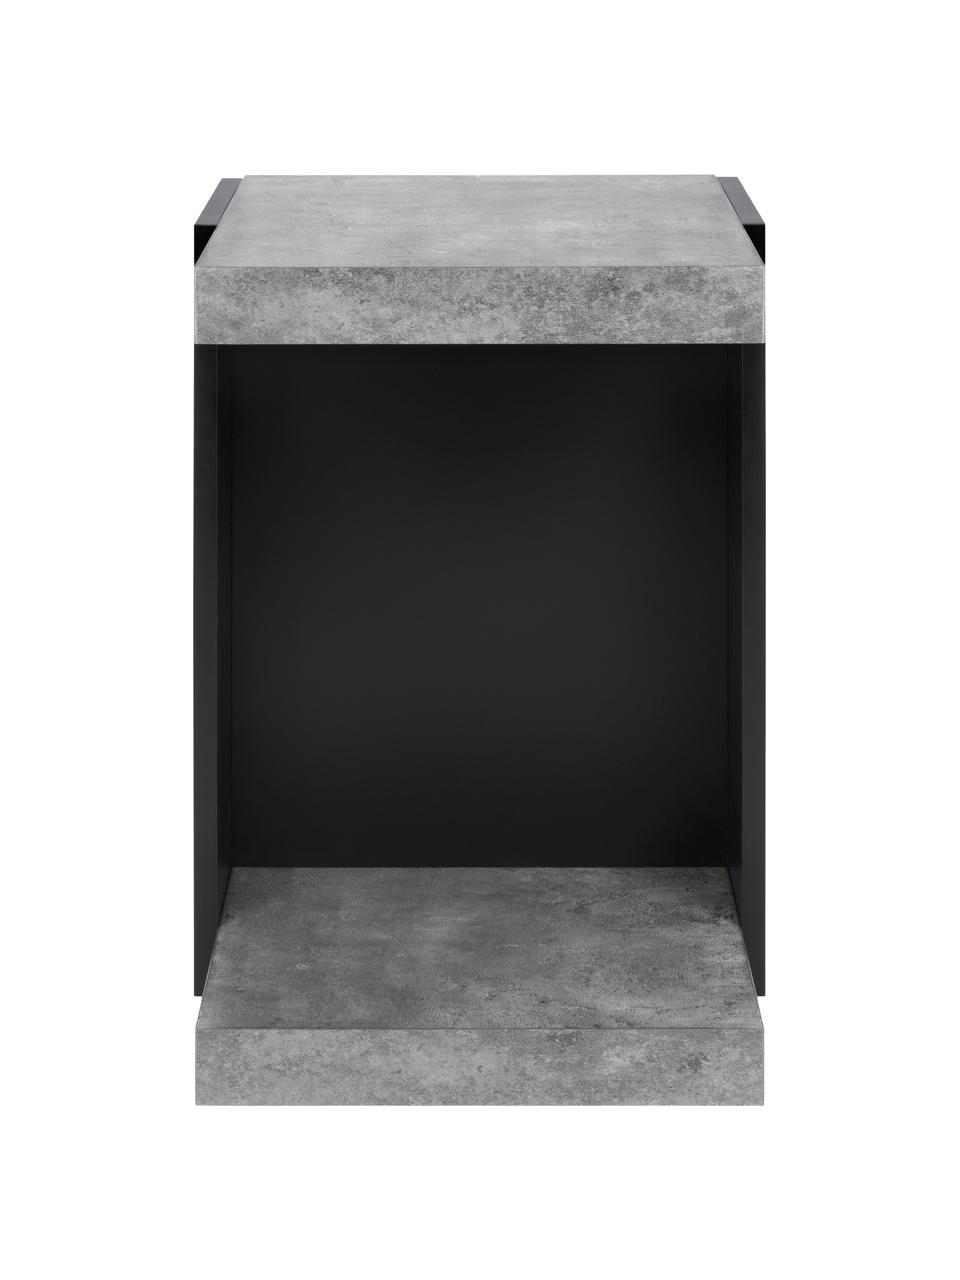 Stolik pomocniczy Klaus, Korpus: płyta wiórowa w lekkiej s, Imitacja betonu, S 38 x W 55 cm